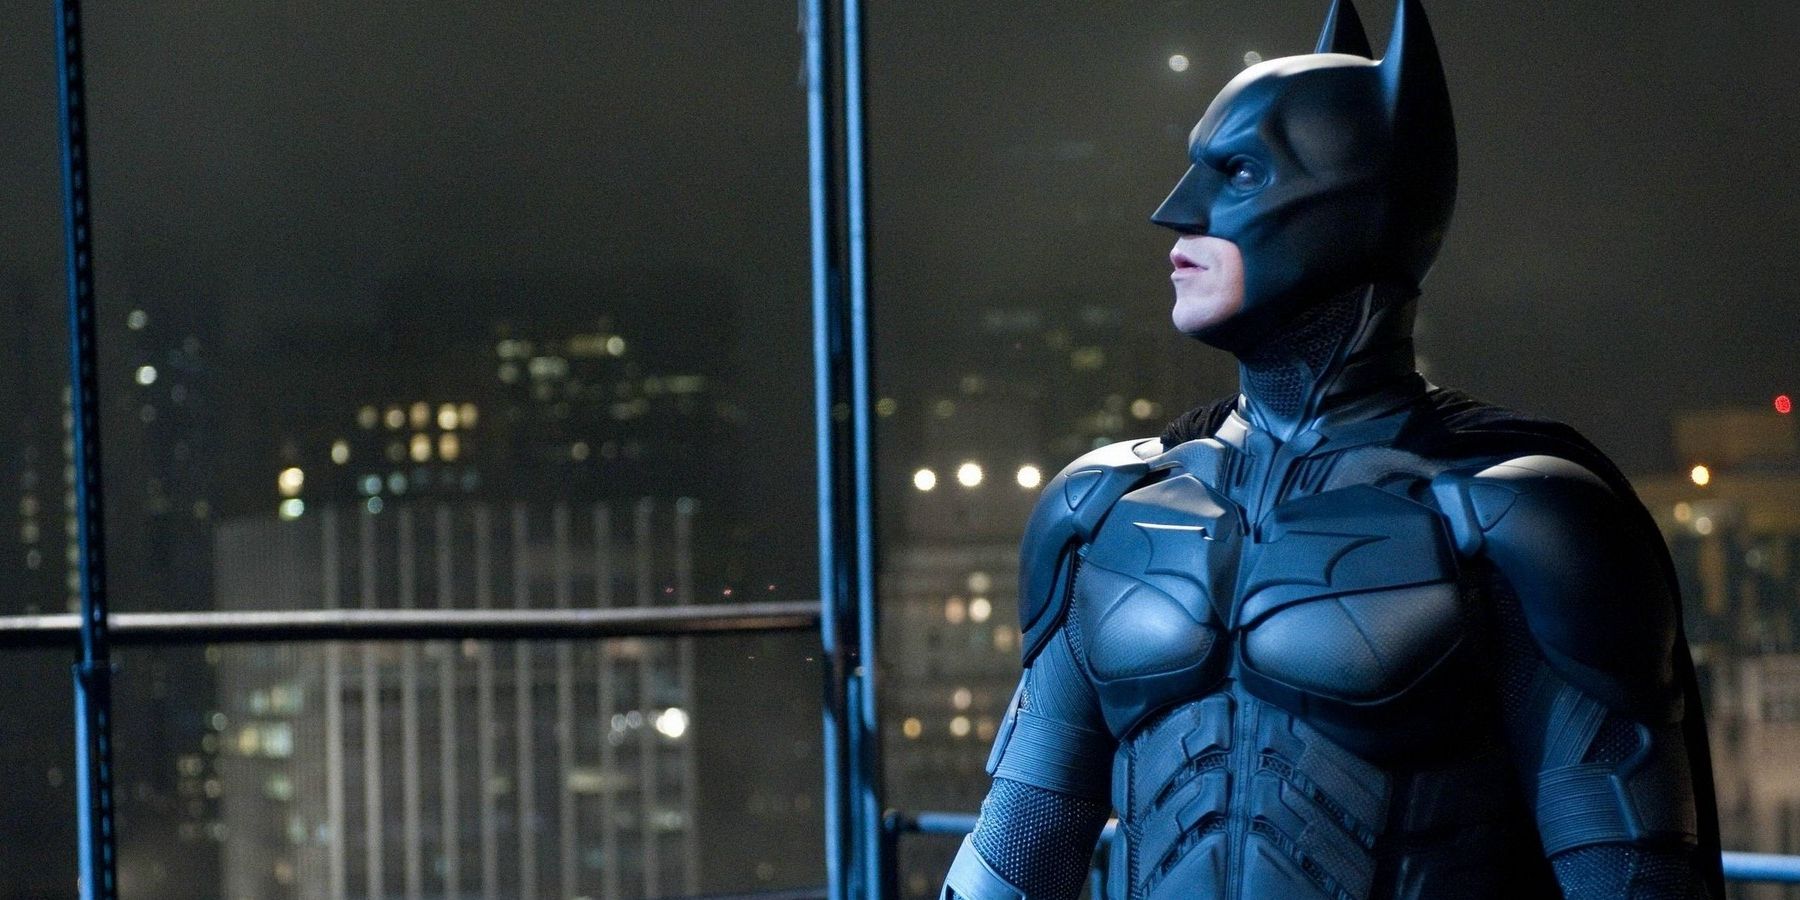 Dark Knight Rises Sequel: Why Nolan Never Made A 4th Batman Movie